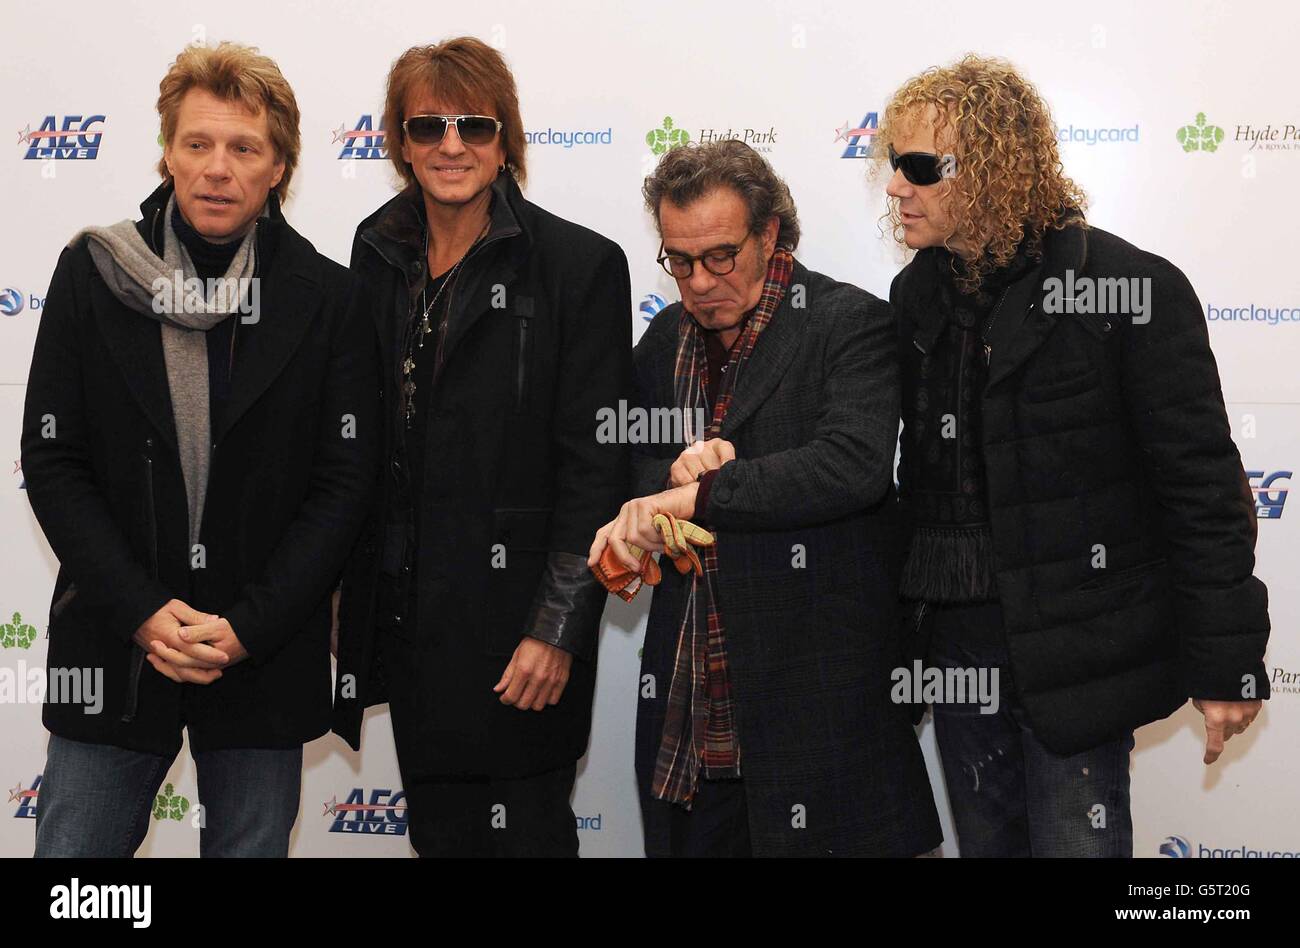 Mitglieder von Bon Jovi, (von links nach rechts) Jon Bon Jovi, Richie Sambora, Tico Torres und David Bryan , während einer Pressekonferenz im Mandarin Oriental, wo sie am 5. Juli einen Sommerauftritt im Hyde Park, London, ankündigen. Stockfoto